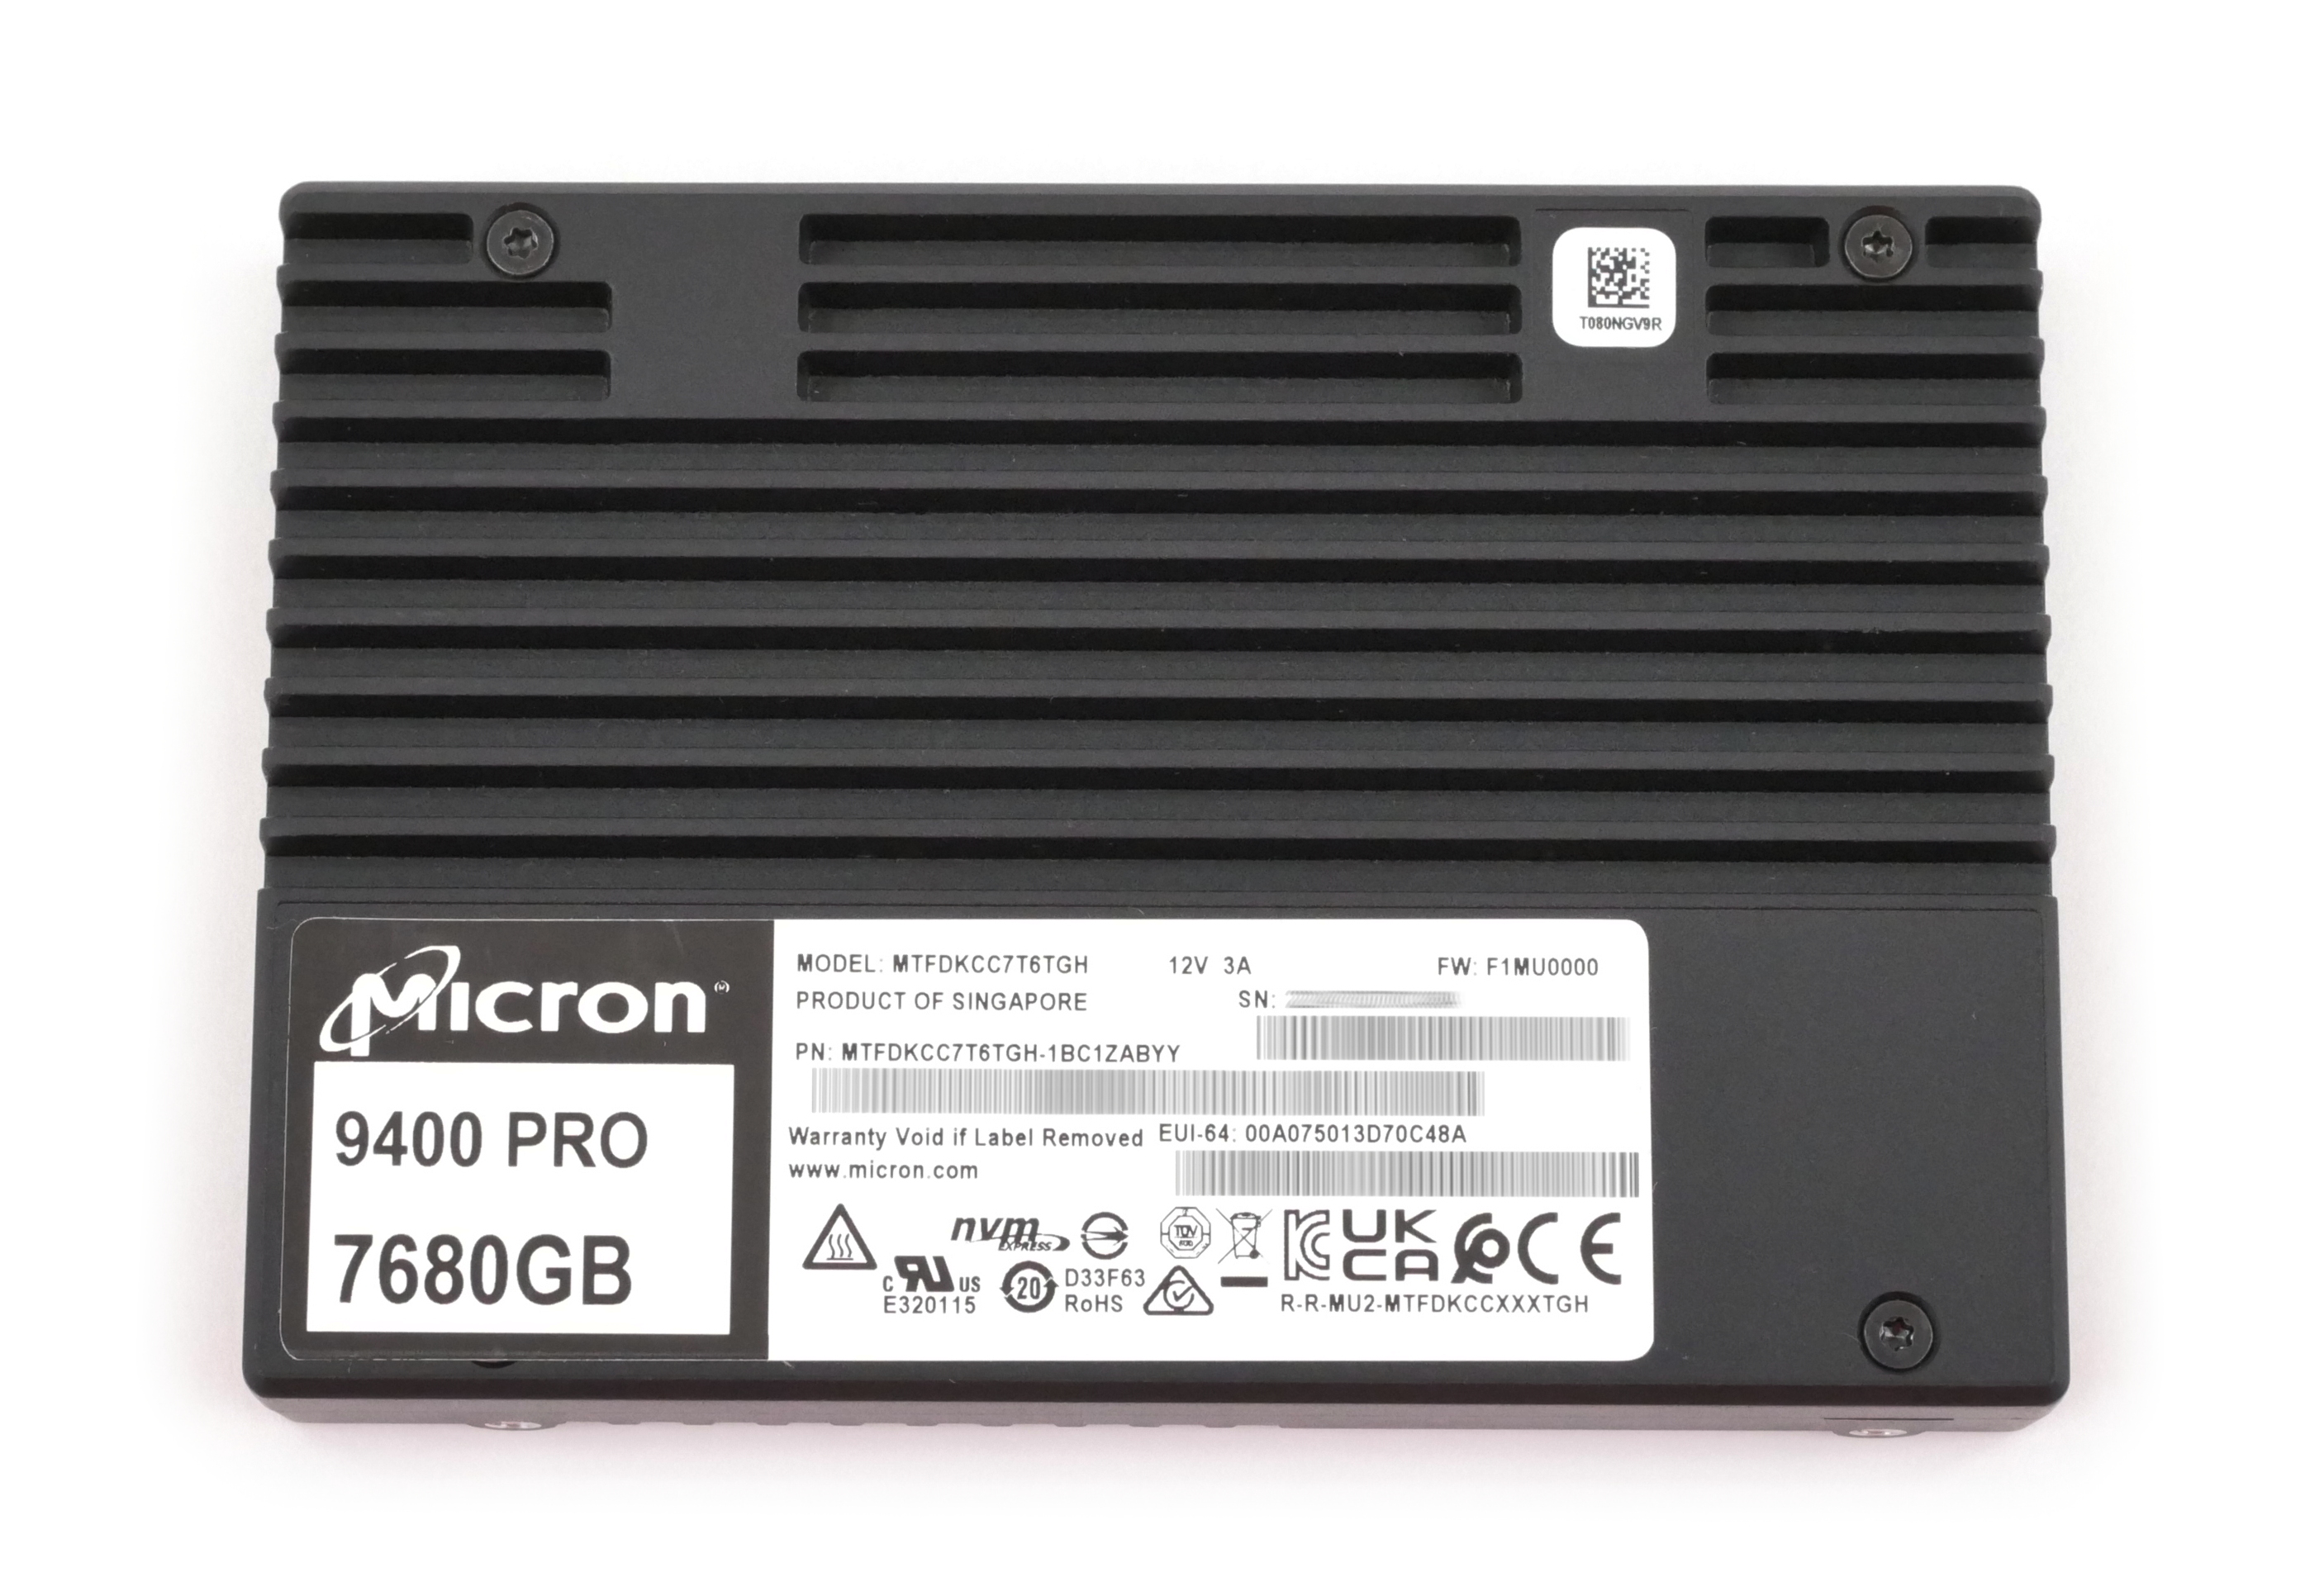 Micron 9400 Pro Enterprise 7.68TB MTFDKCC7T6TGH-1BC1ZABYY SSD U.3 PCIe NVMe 2.5" - Click Image to Close